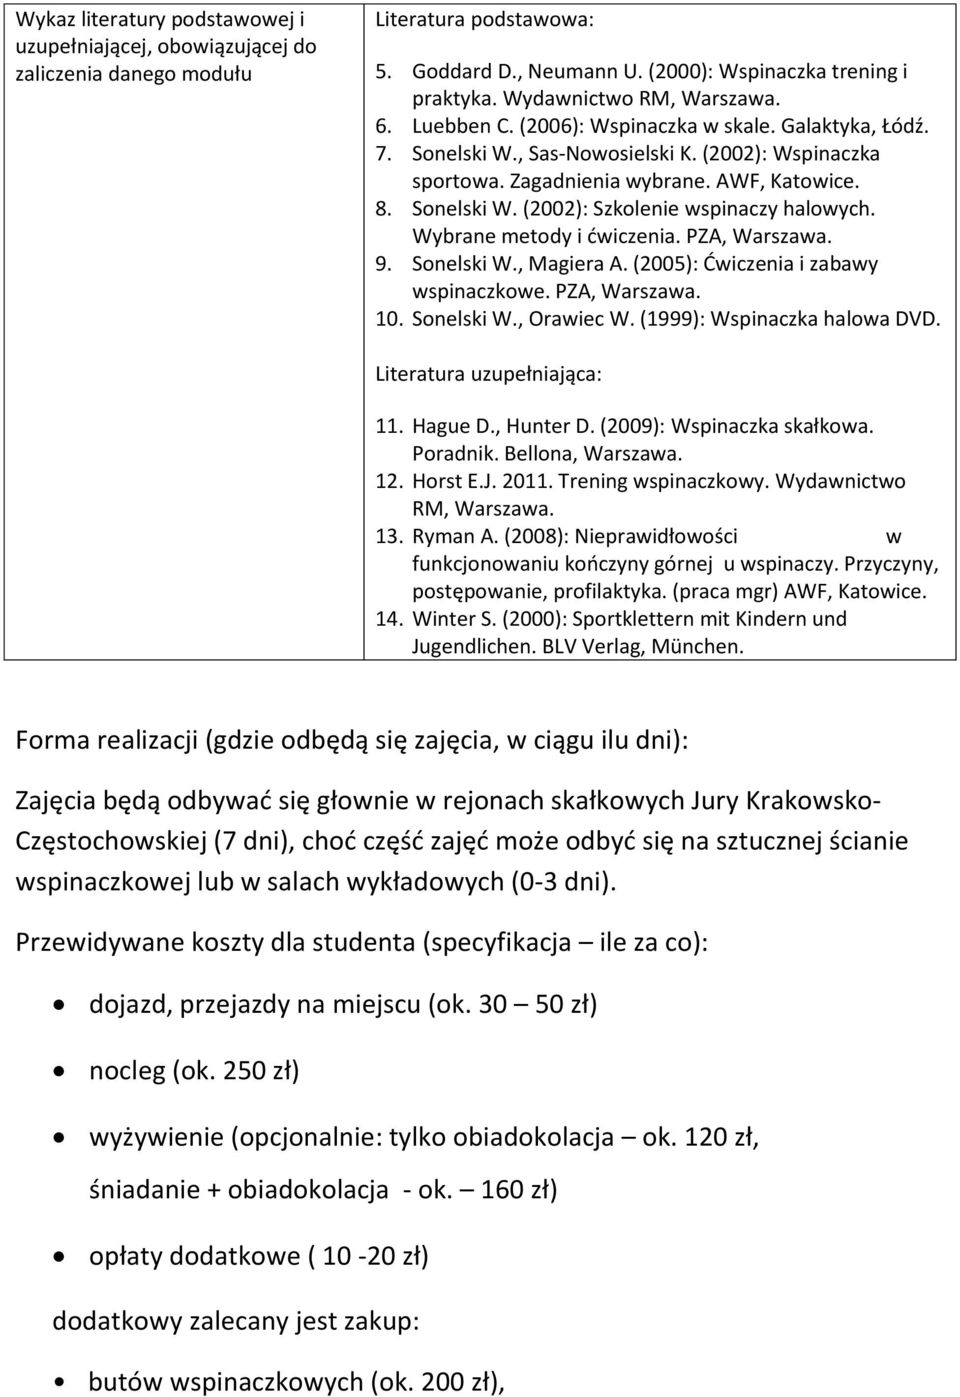 Wybrane metody i ćwiczenia. PZA, Warszawa. 9. Sonelski W., Magiera A. (2005): Ćwiczenia i zabawy wspinaczkowe. PZA, Warszawa. 10. Sonelski W., Orawiec W. (1999): Wspinaczka halowa DVD.